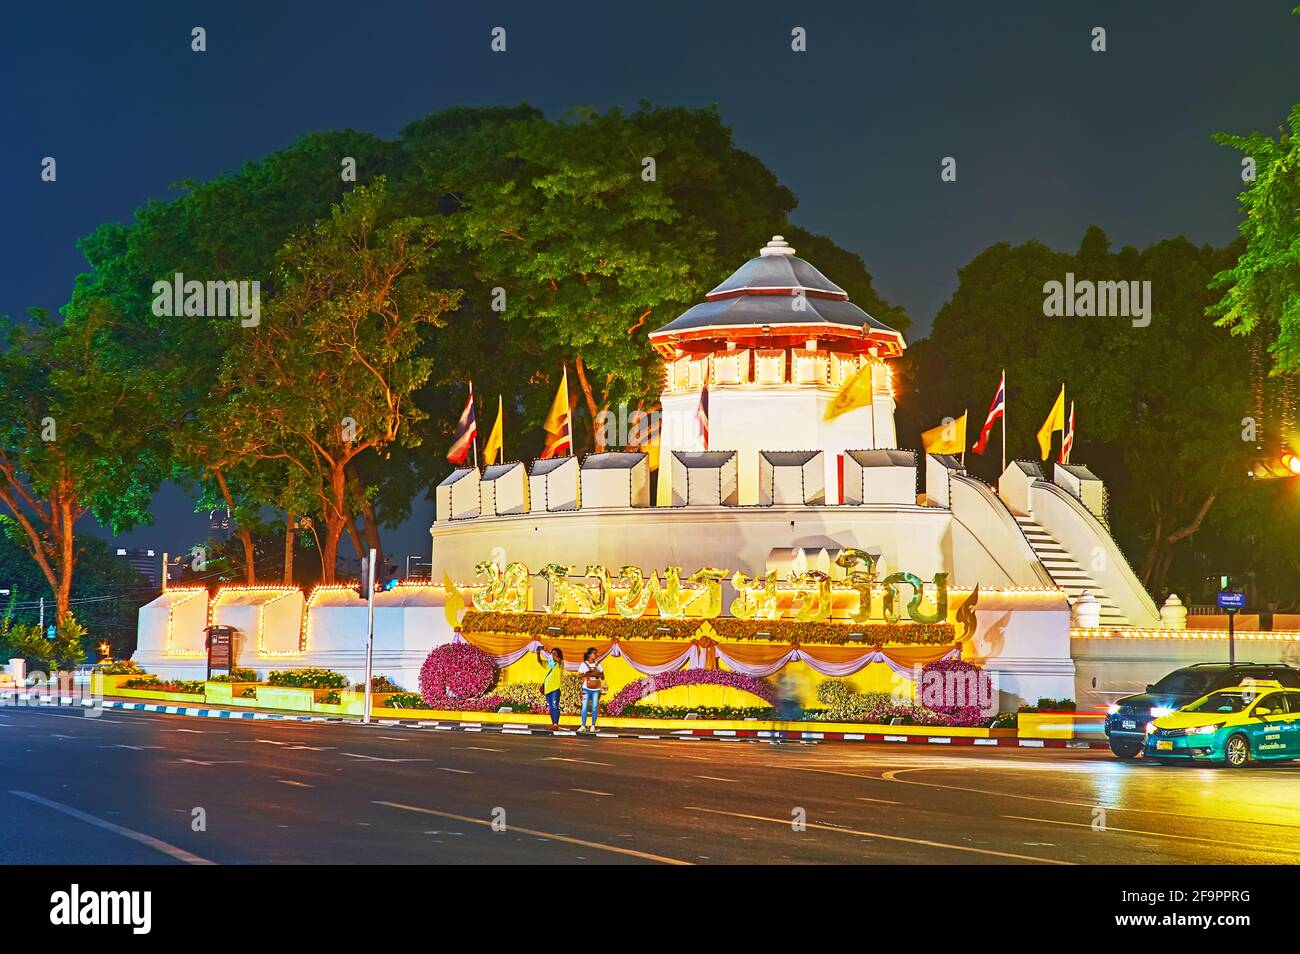 BANGKOK, THAÏLANDE - 11 MAI 2019 : fort historique de Phra Sumen dans des lumières de soirée lumineuses, décorées de drapeaux et de fleurs, quartier de Banglamphu, le 11 mai Banque D'Images